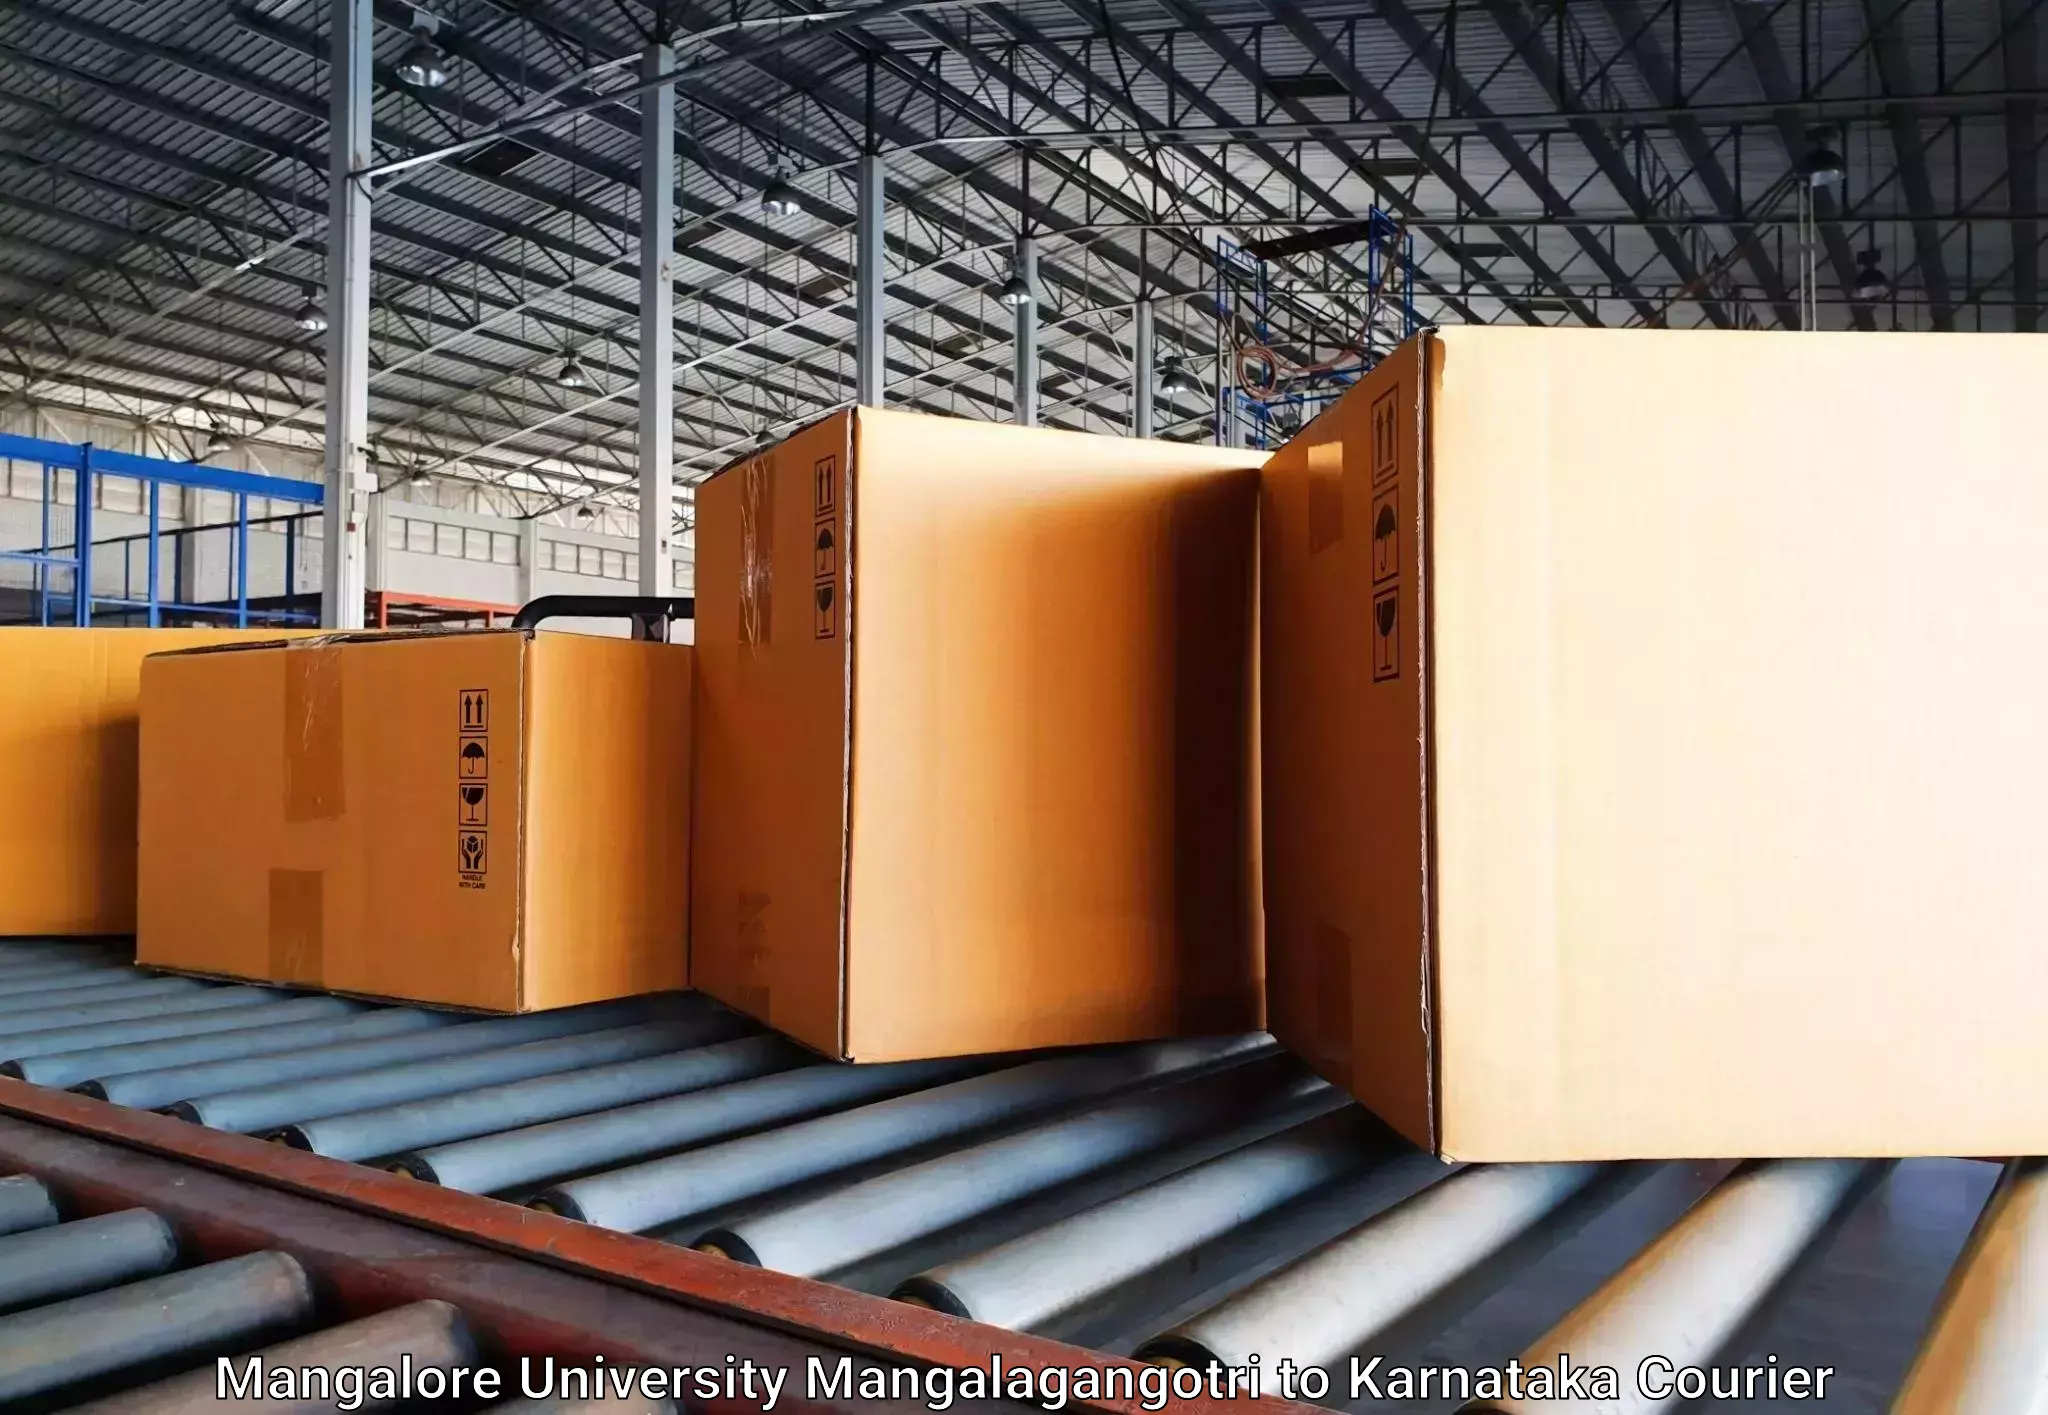 Luggage shipping specialists in Mangalore University Mangalagangotri to Dharmasthala